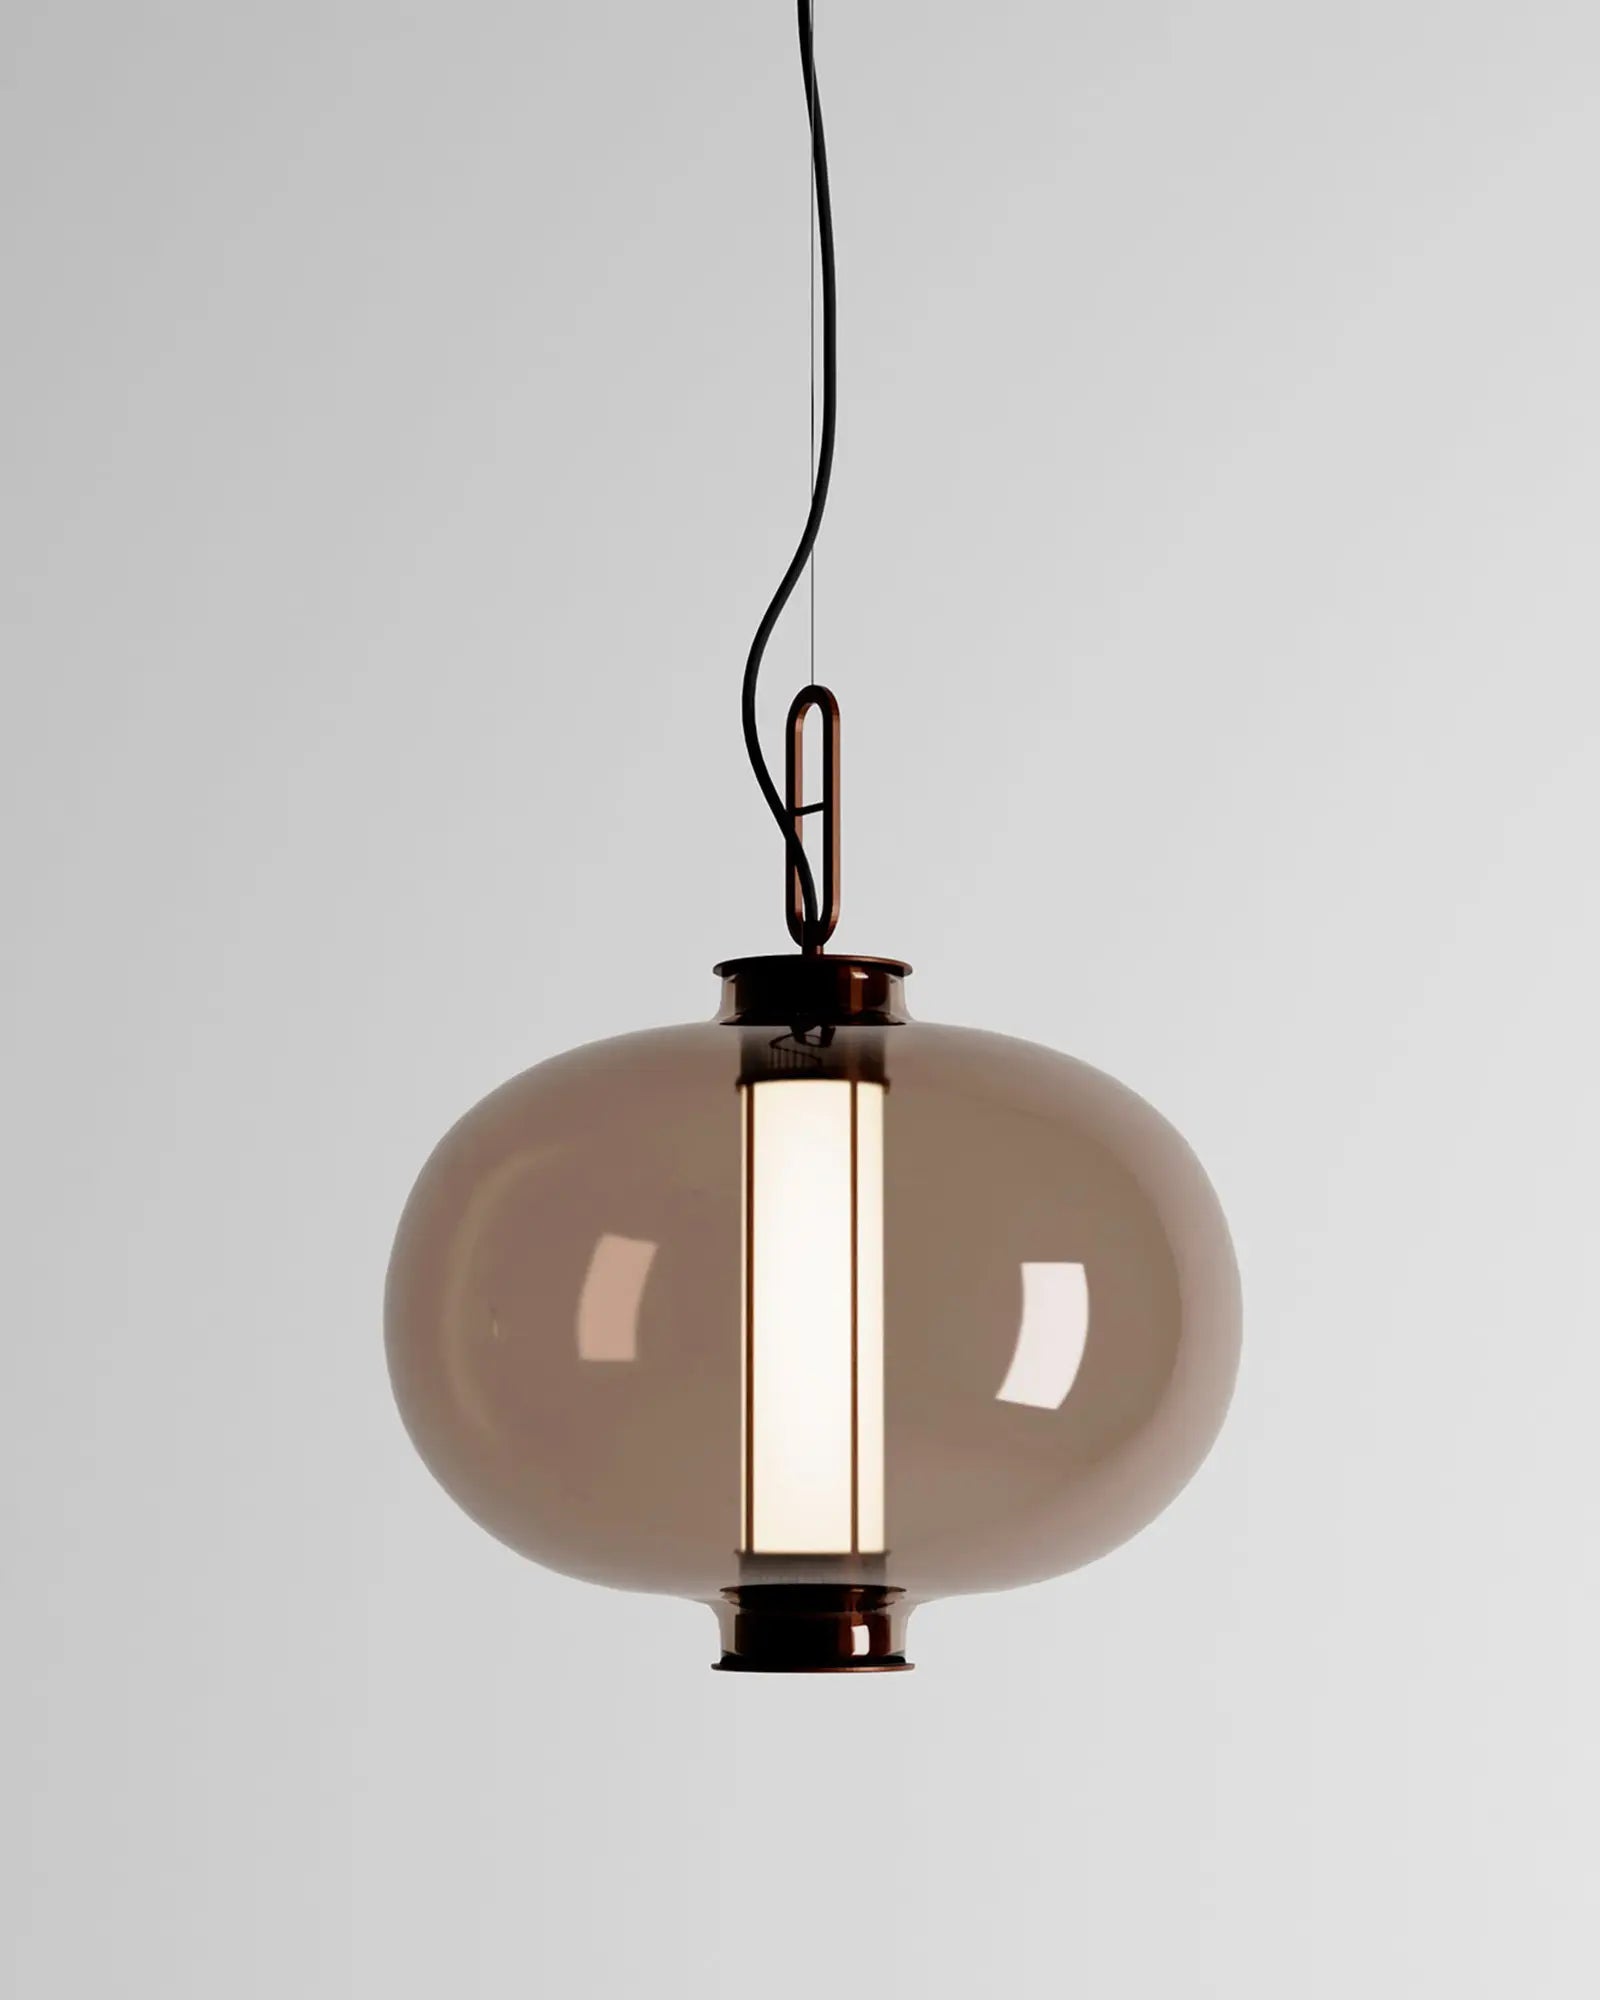 Bai Ma Ma Chinese inspired large lantern style pendant light amber glass